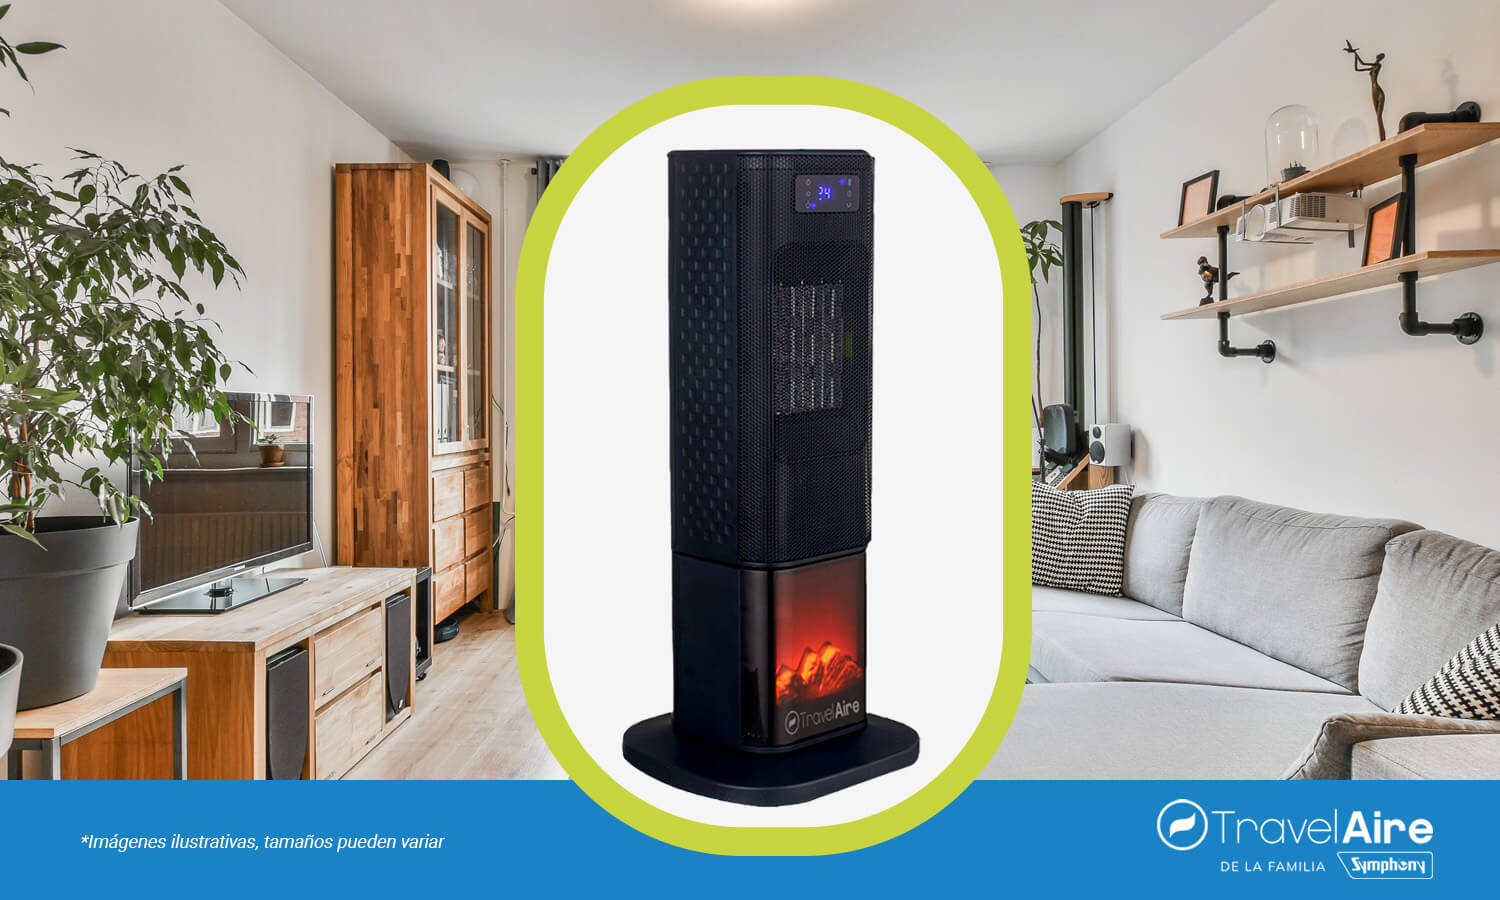 El calentador eléctrico es el aparato más utilizado para calentar los hogares.